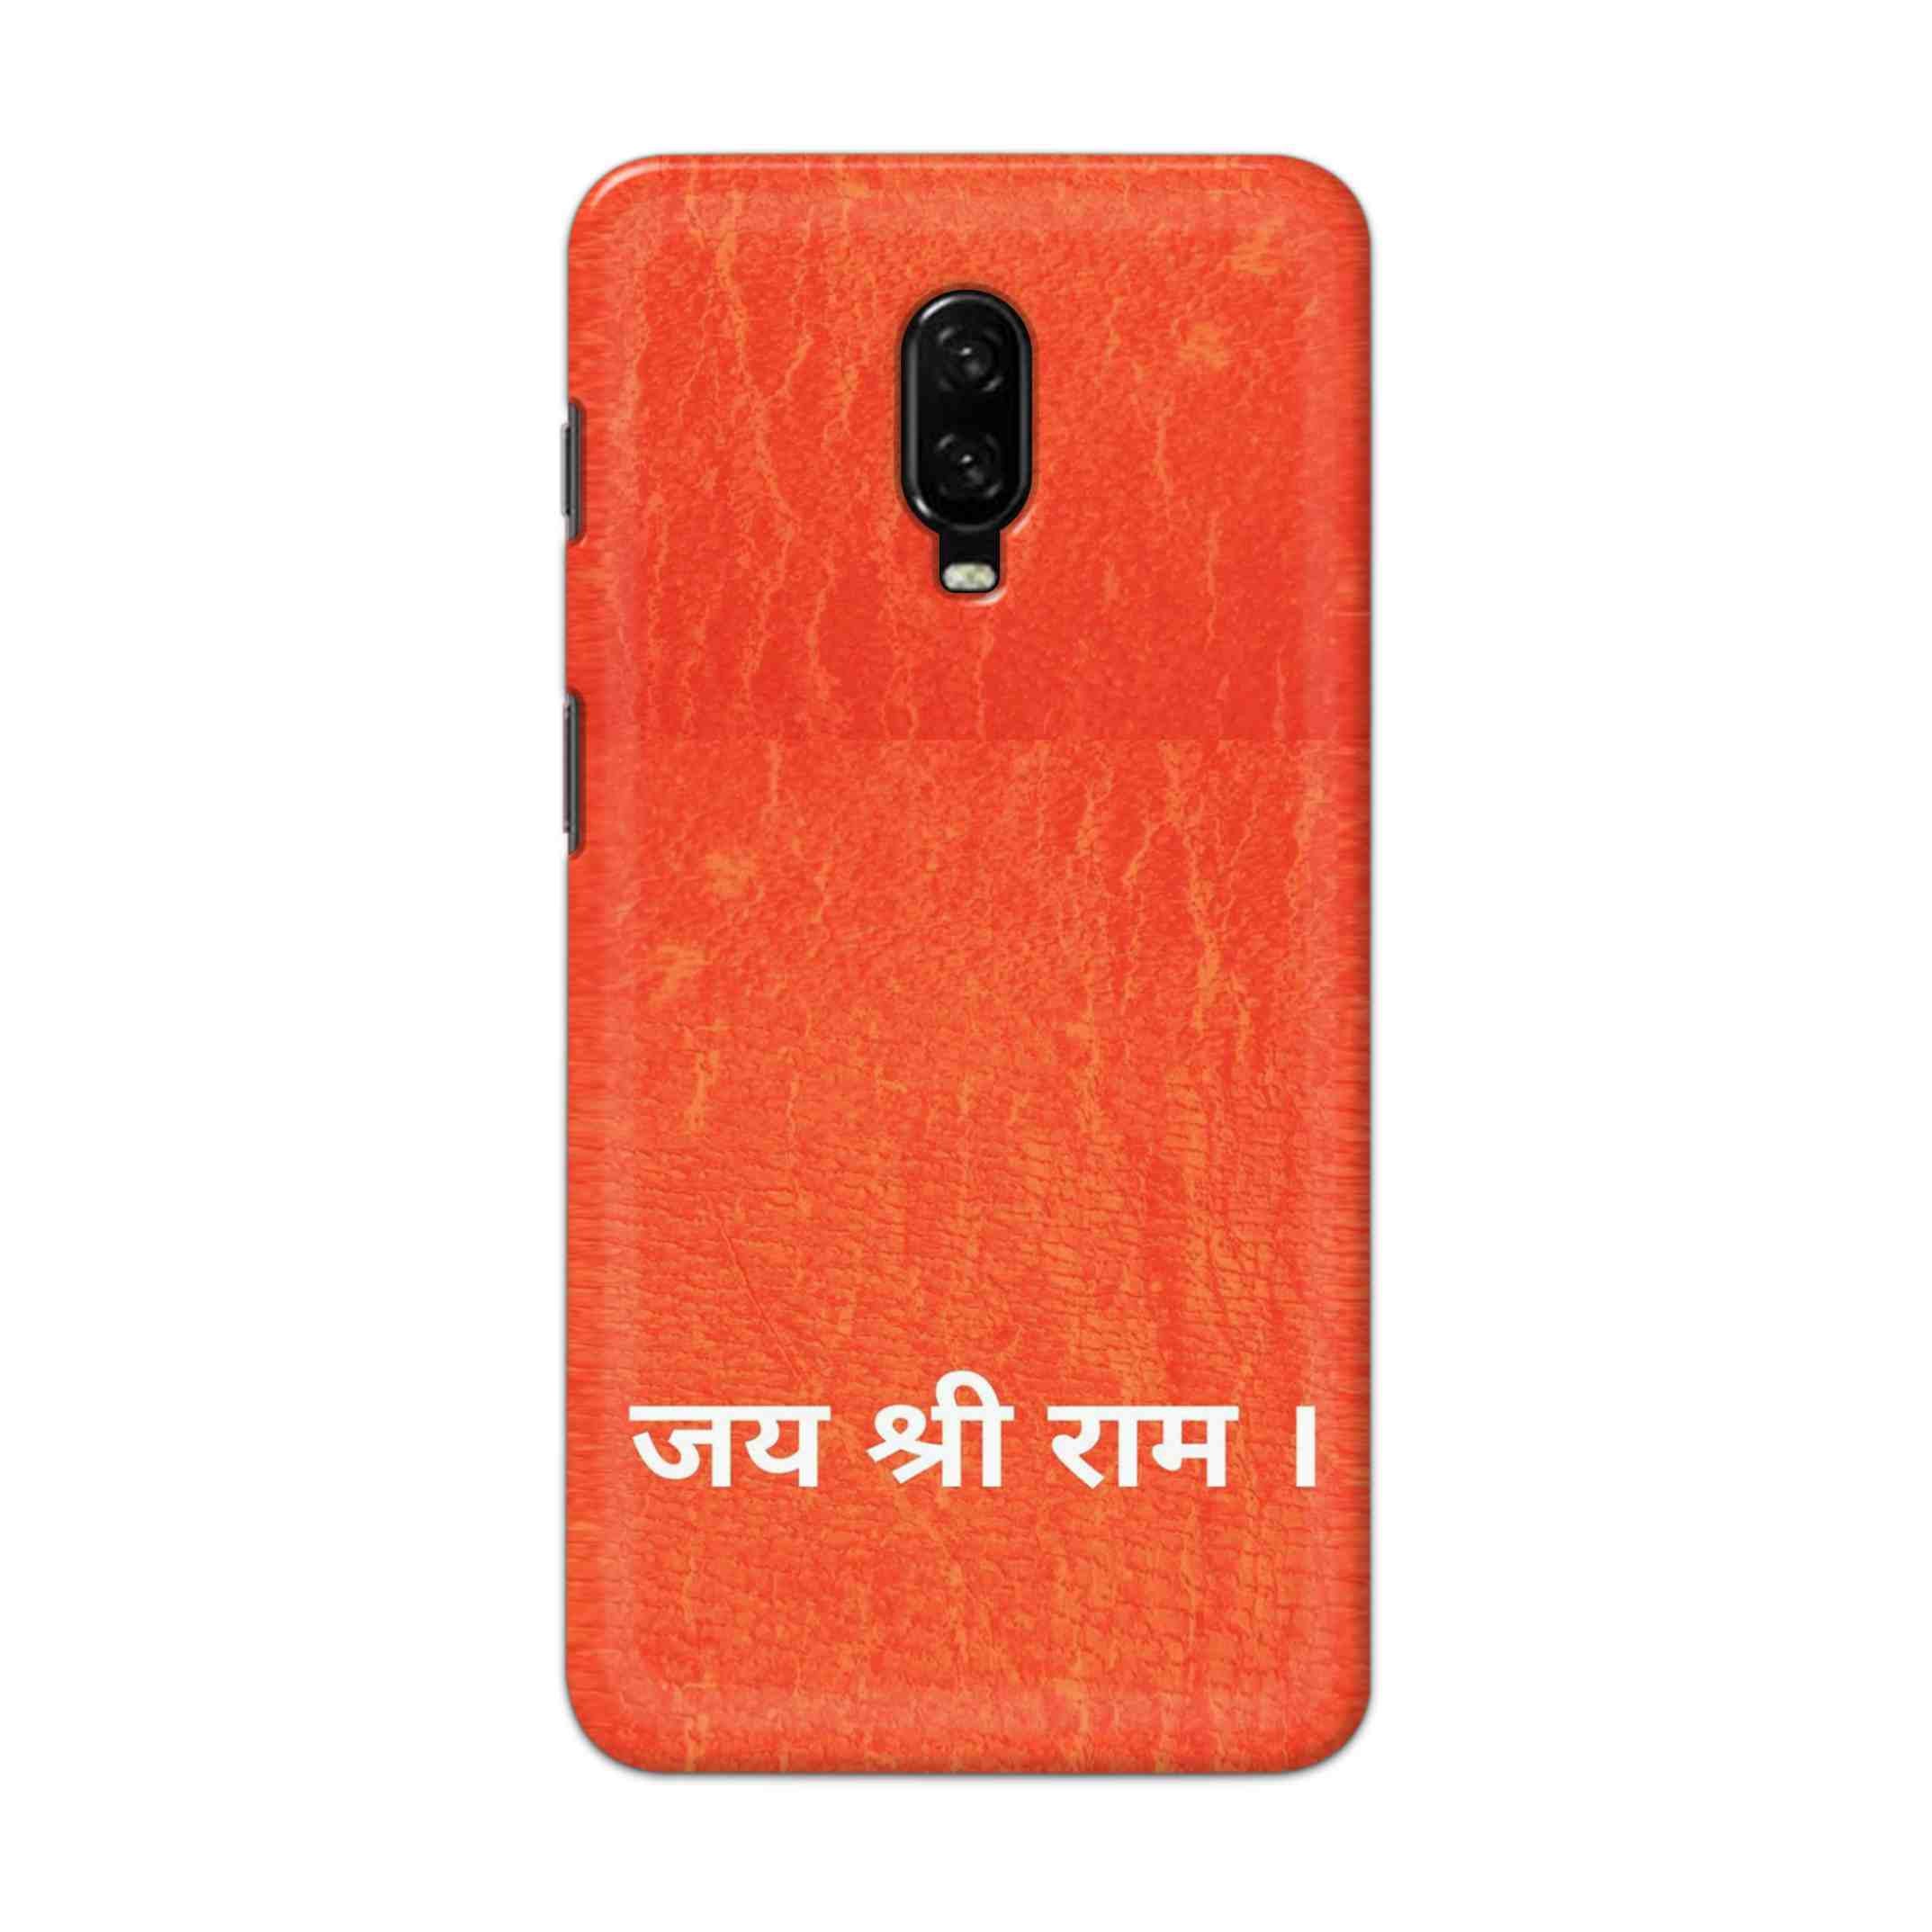 Buy Jai Shree Ram Hard Back Mobile Phone Case Cover For OnePlus 6T Online